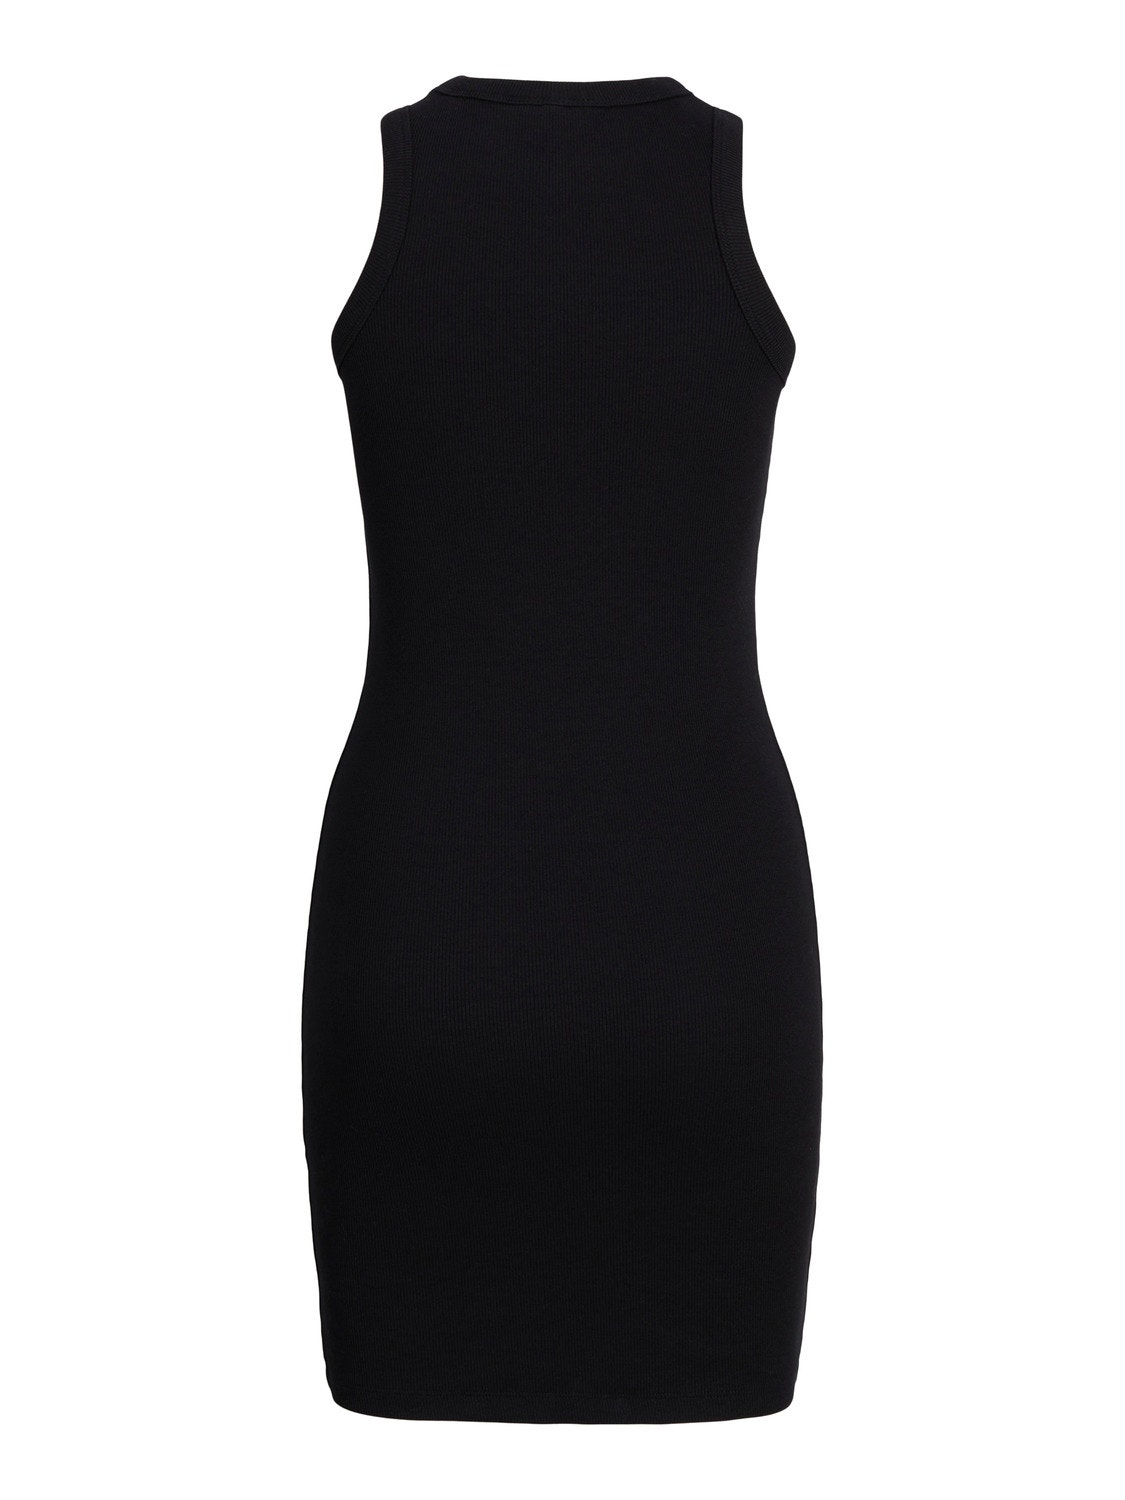 JJXX JXFOREST Dress -Black - 12248657